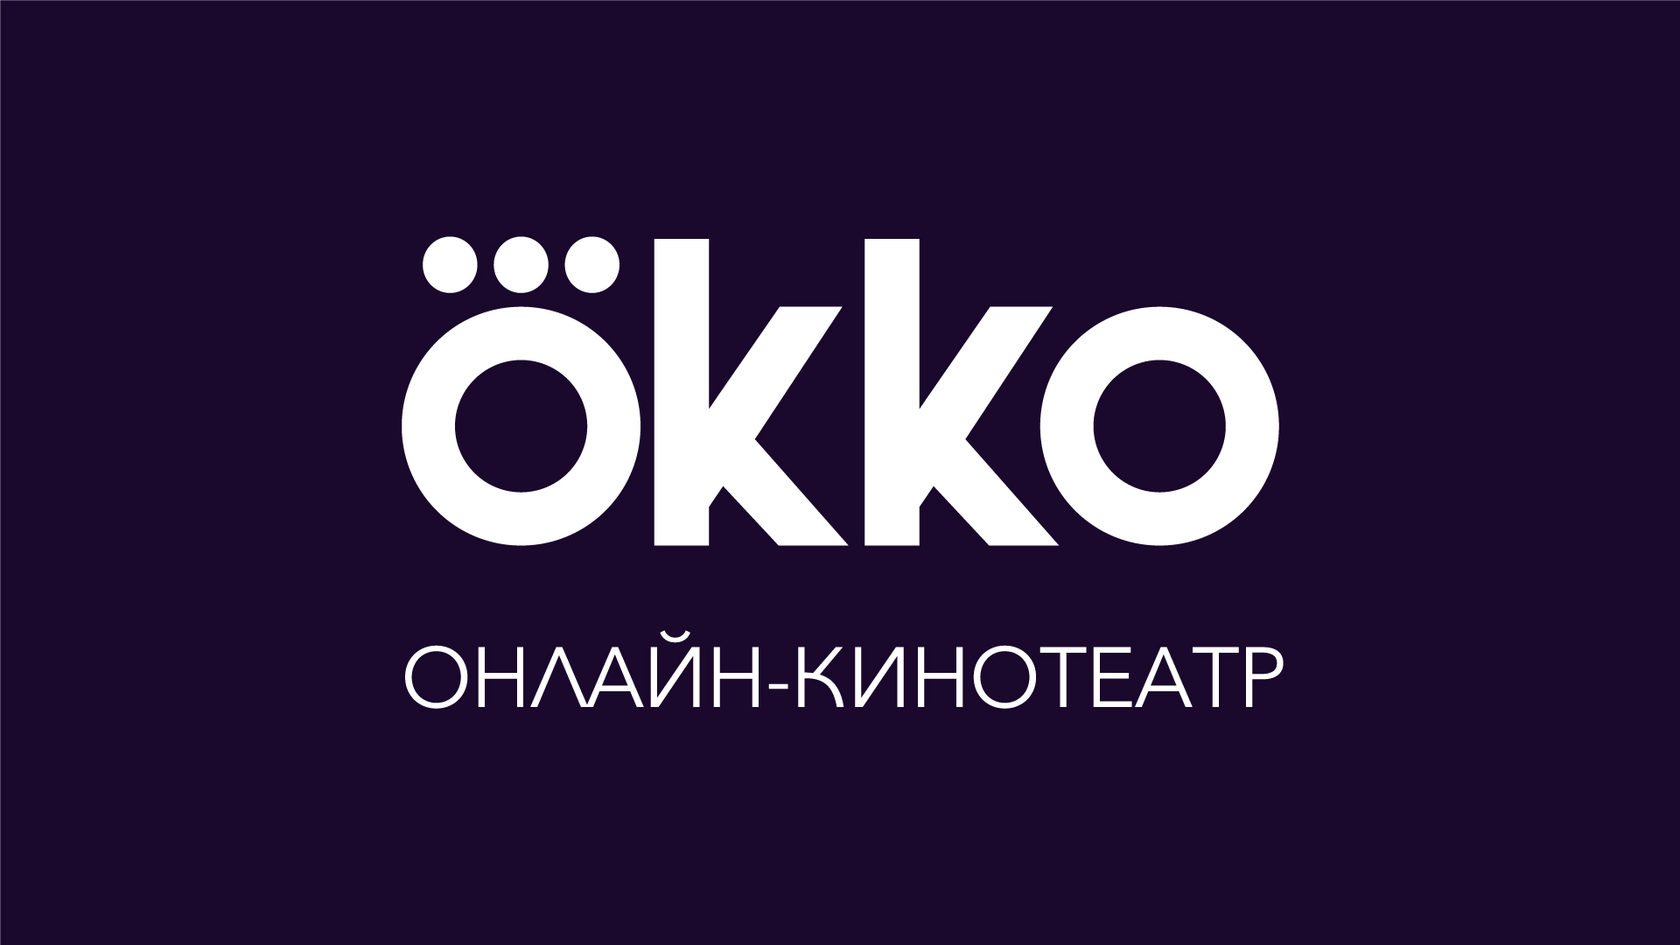 Okko_logo.jpg